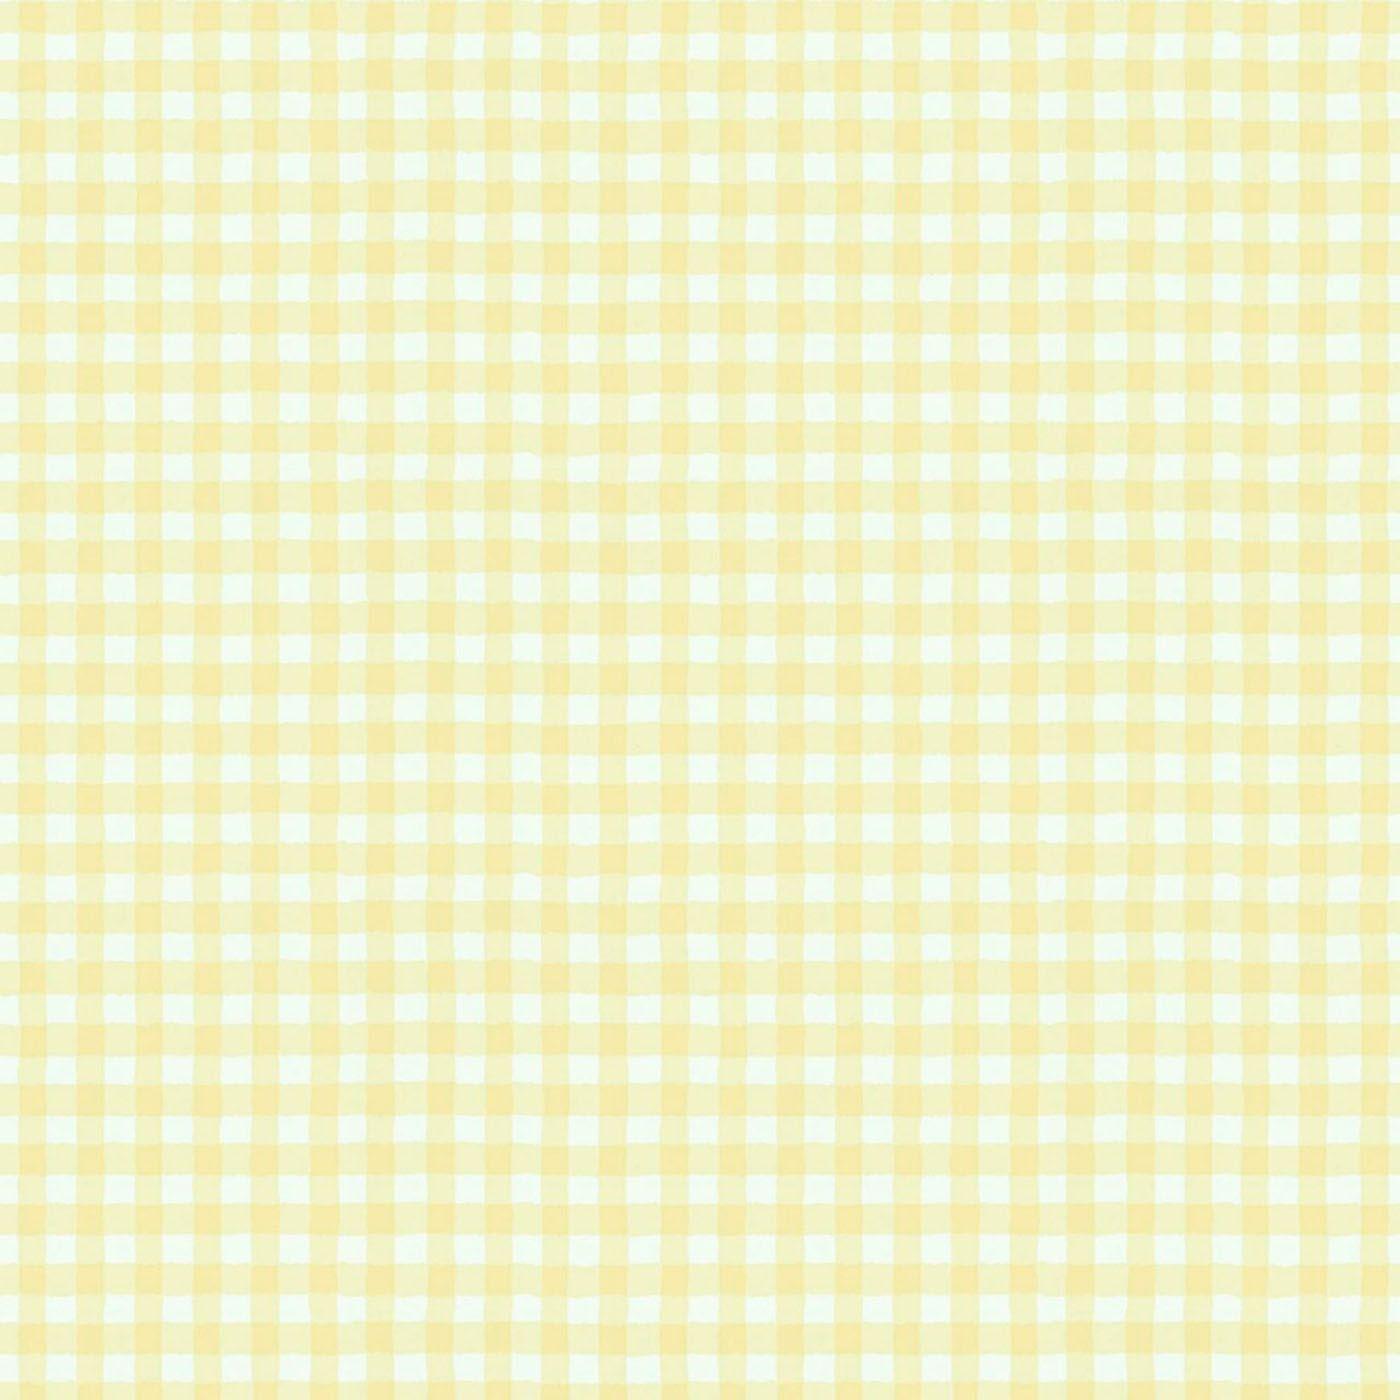 Checkered Wallpapers: Hình nền checkered sẽ mang lại cho bạn một cái nhìn hoàn toàn mới về phong cách và thời trang. Họa tiết ô vuông với các màu sắc tươi sáng sẽ tạo nên một không gian sống động và trẻ trung. Khám phá và tạo ra một phong cách riêng cho mình với hình nền checkered này!